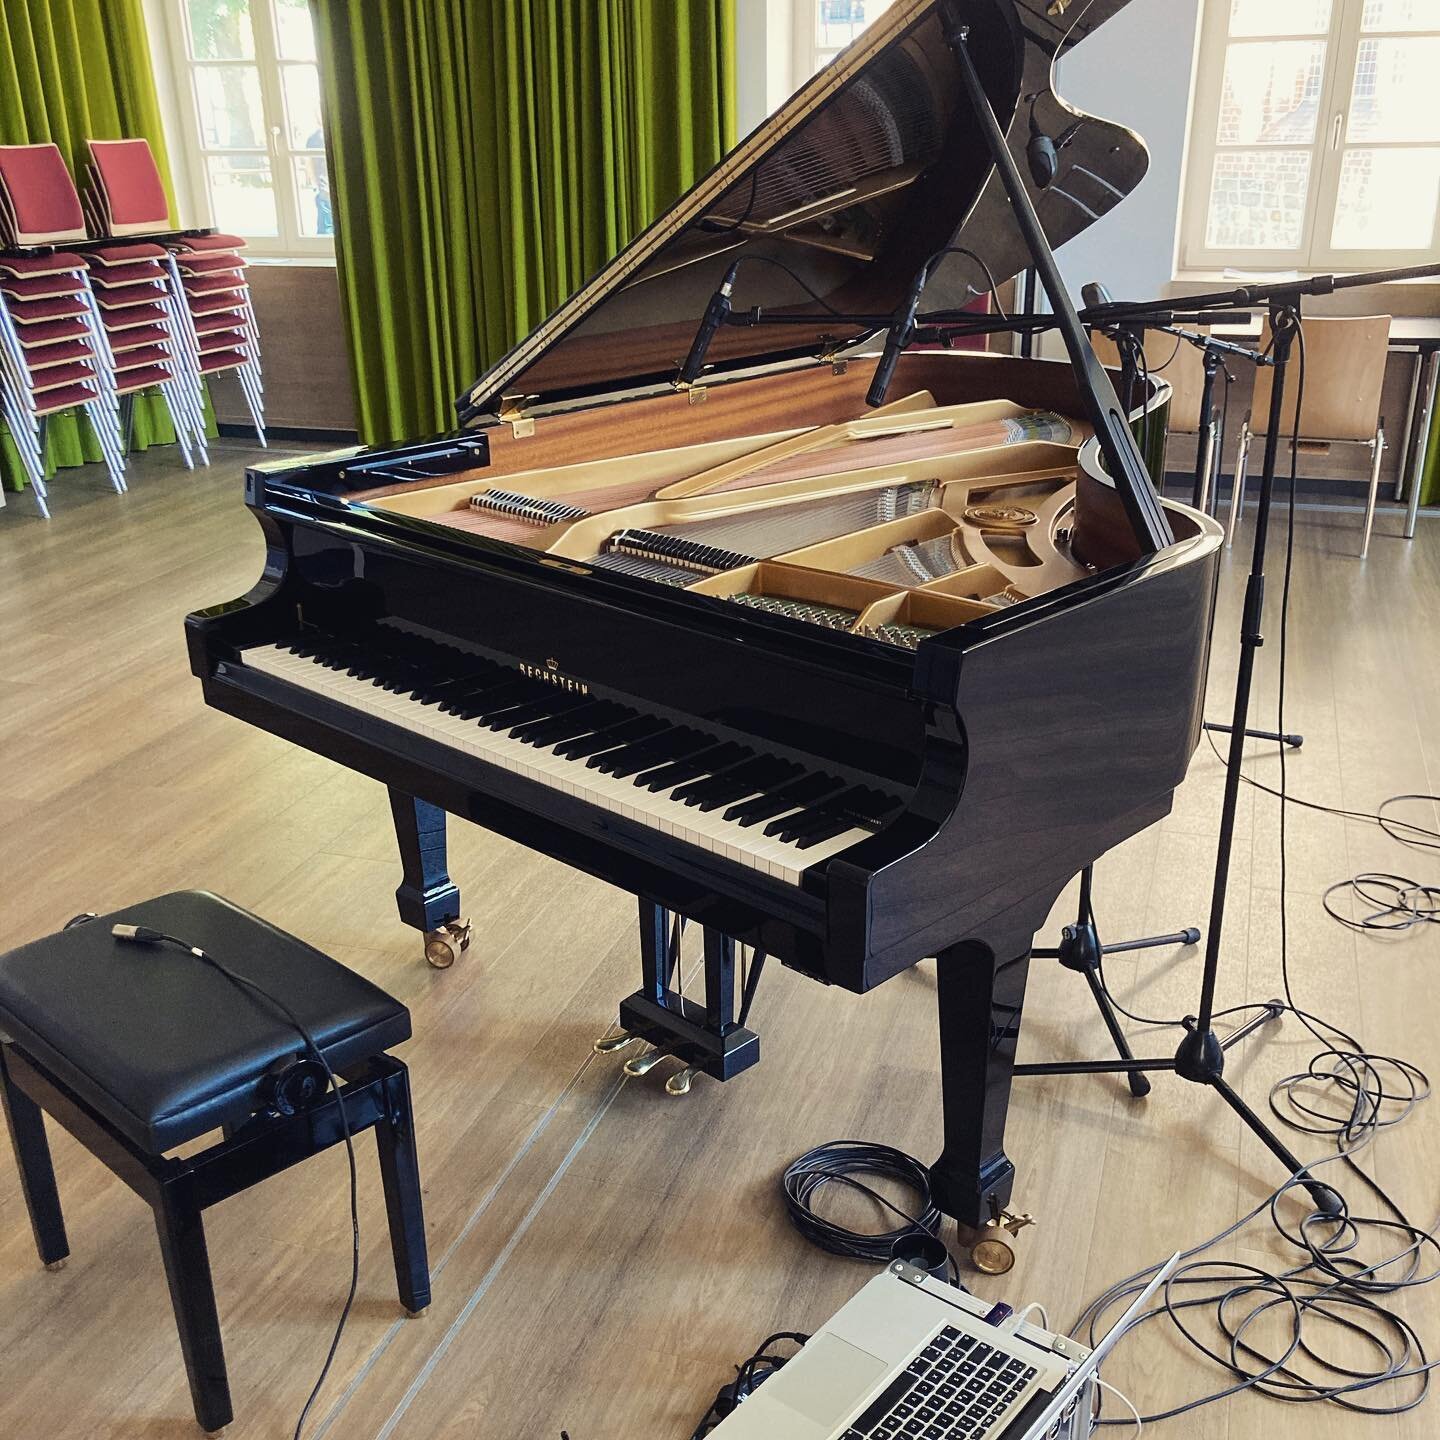 Piano Recording f&uuml;r @taroja.klangpoesie 
#piano #bechstein #recording #horizontstudio #sennheiser #neumannmicrophones #machterguteklang